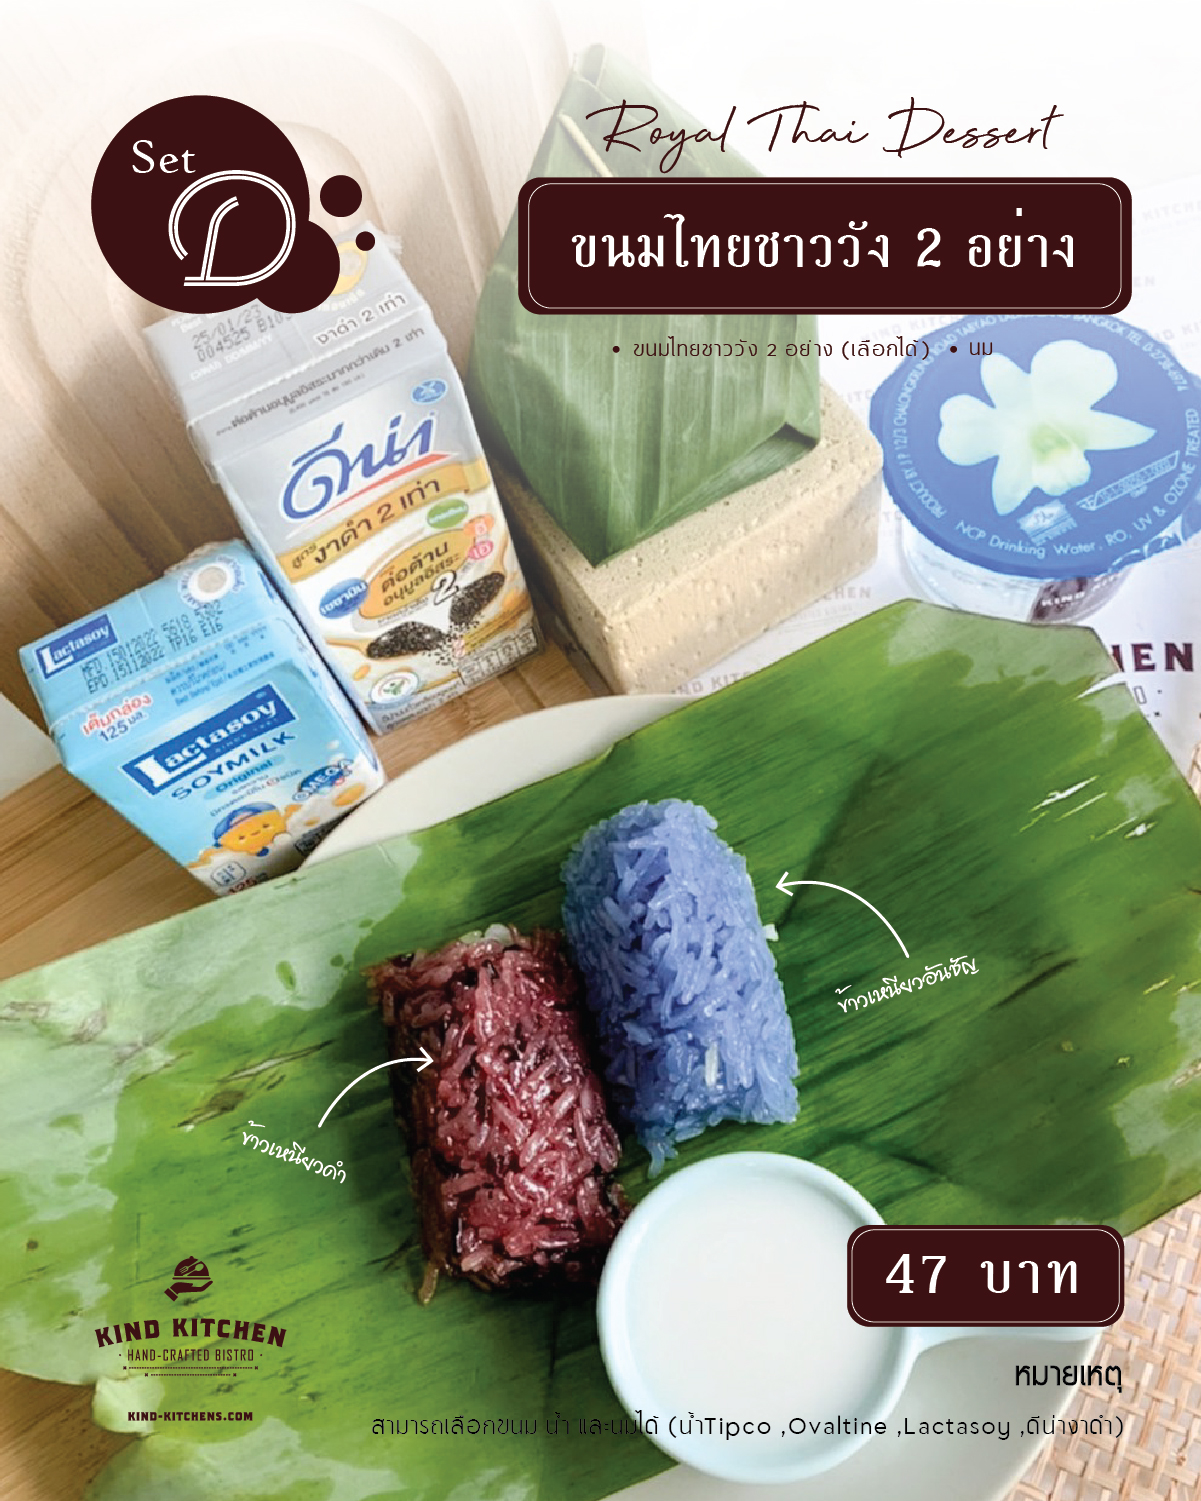 Royal Thai Dessert ขนมชาววัง 2 อย่าง พร้อมน้ำ นม(เลือกได้) Set D